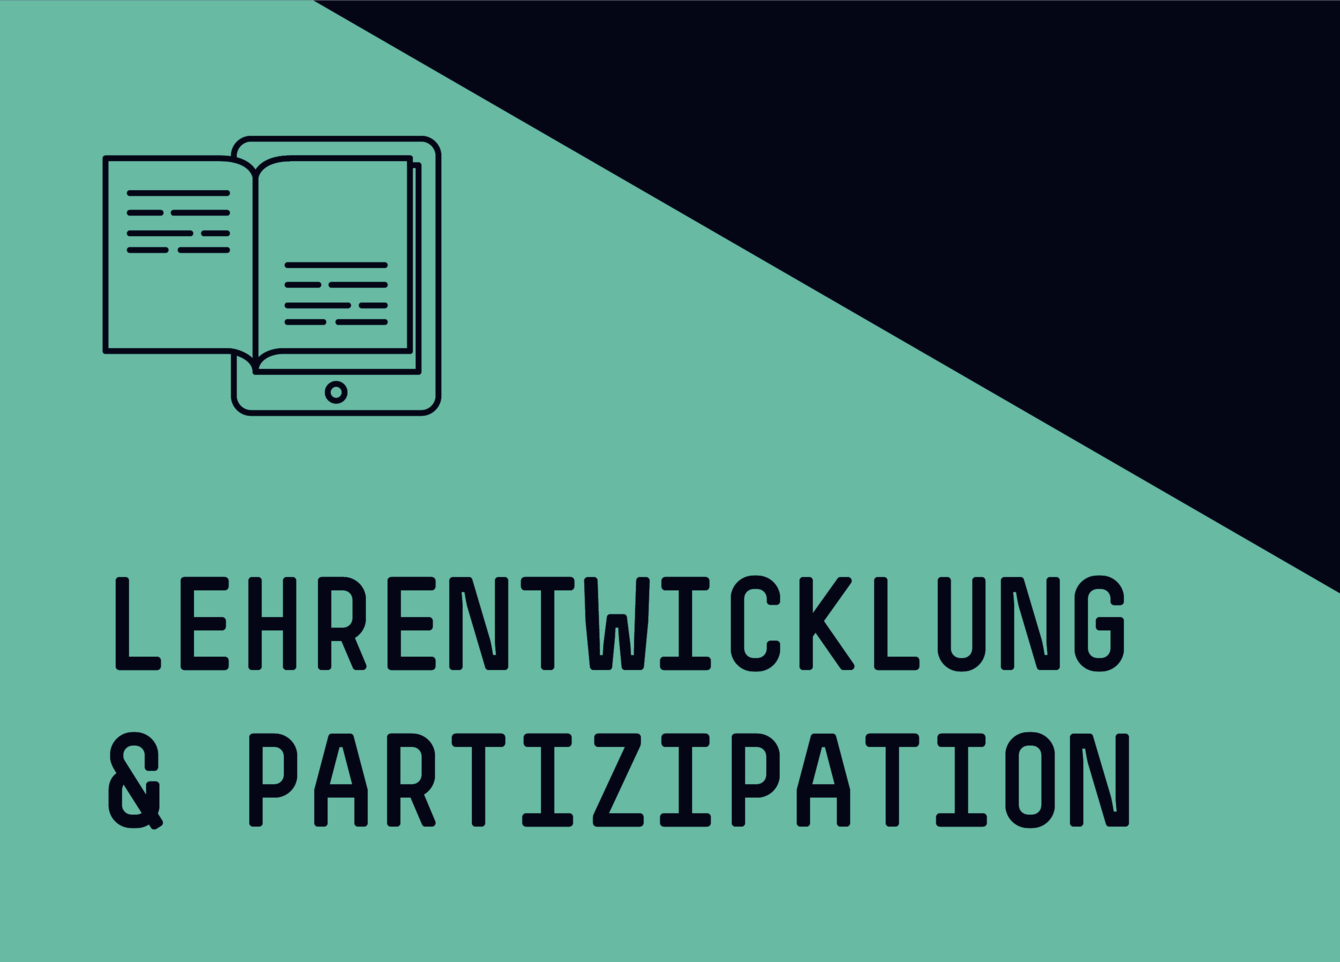 Titelbild: Lehrentwicklung & Partizipation, Tablet-Icon